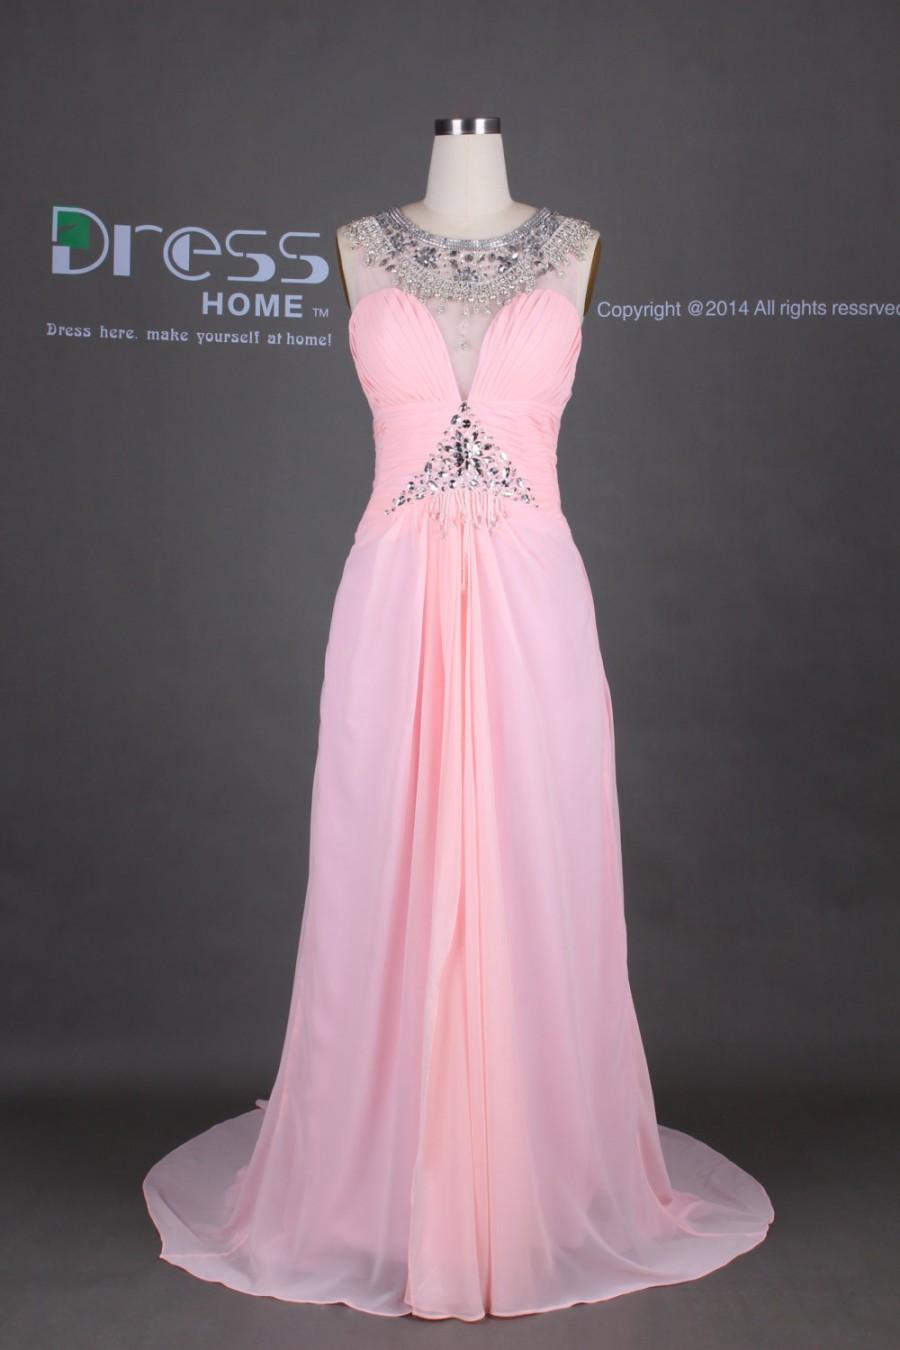 زفاف - Pink Round Neck Beading Long Prom Dress/See Through Open Back Chiffon Prom Dress/Sexy Long Party Dress/Evening Gown/Prom Dresses DH371